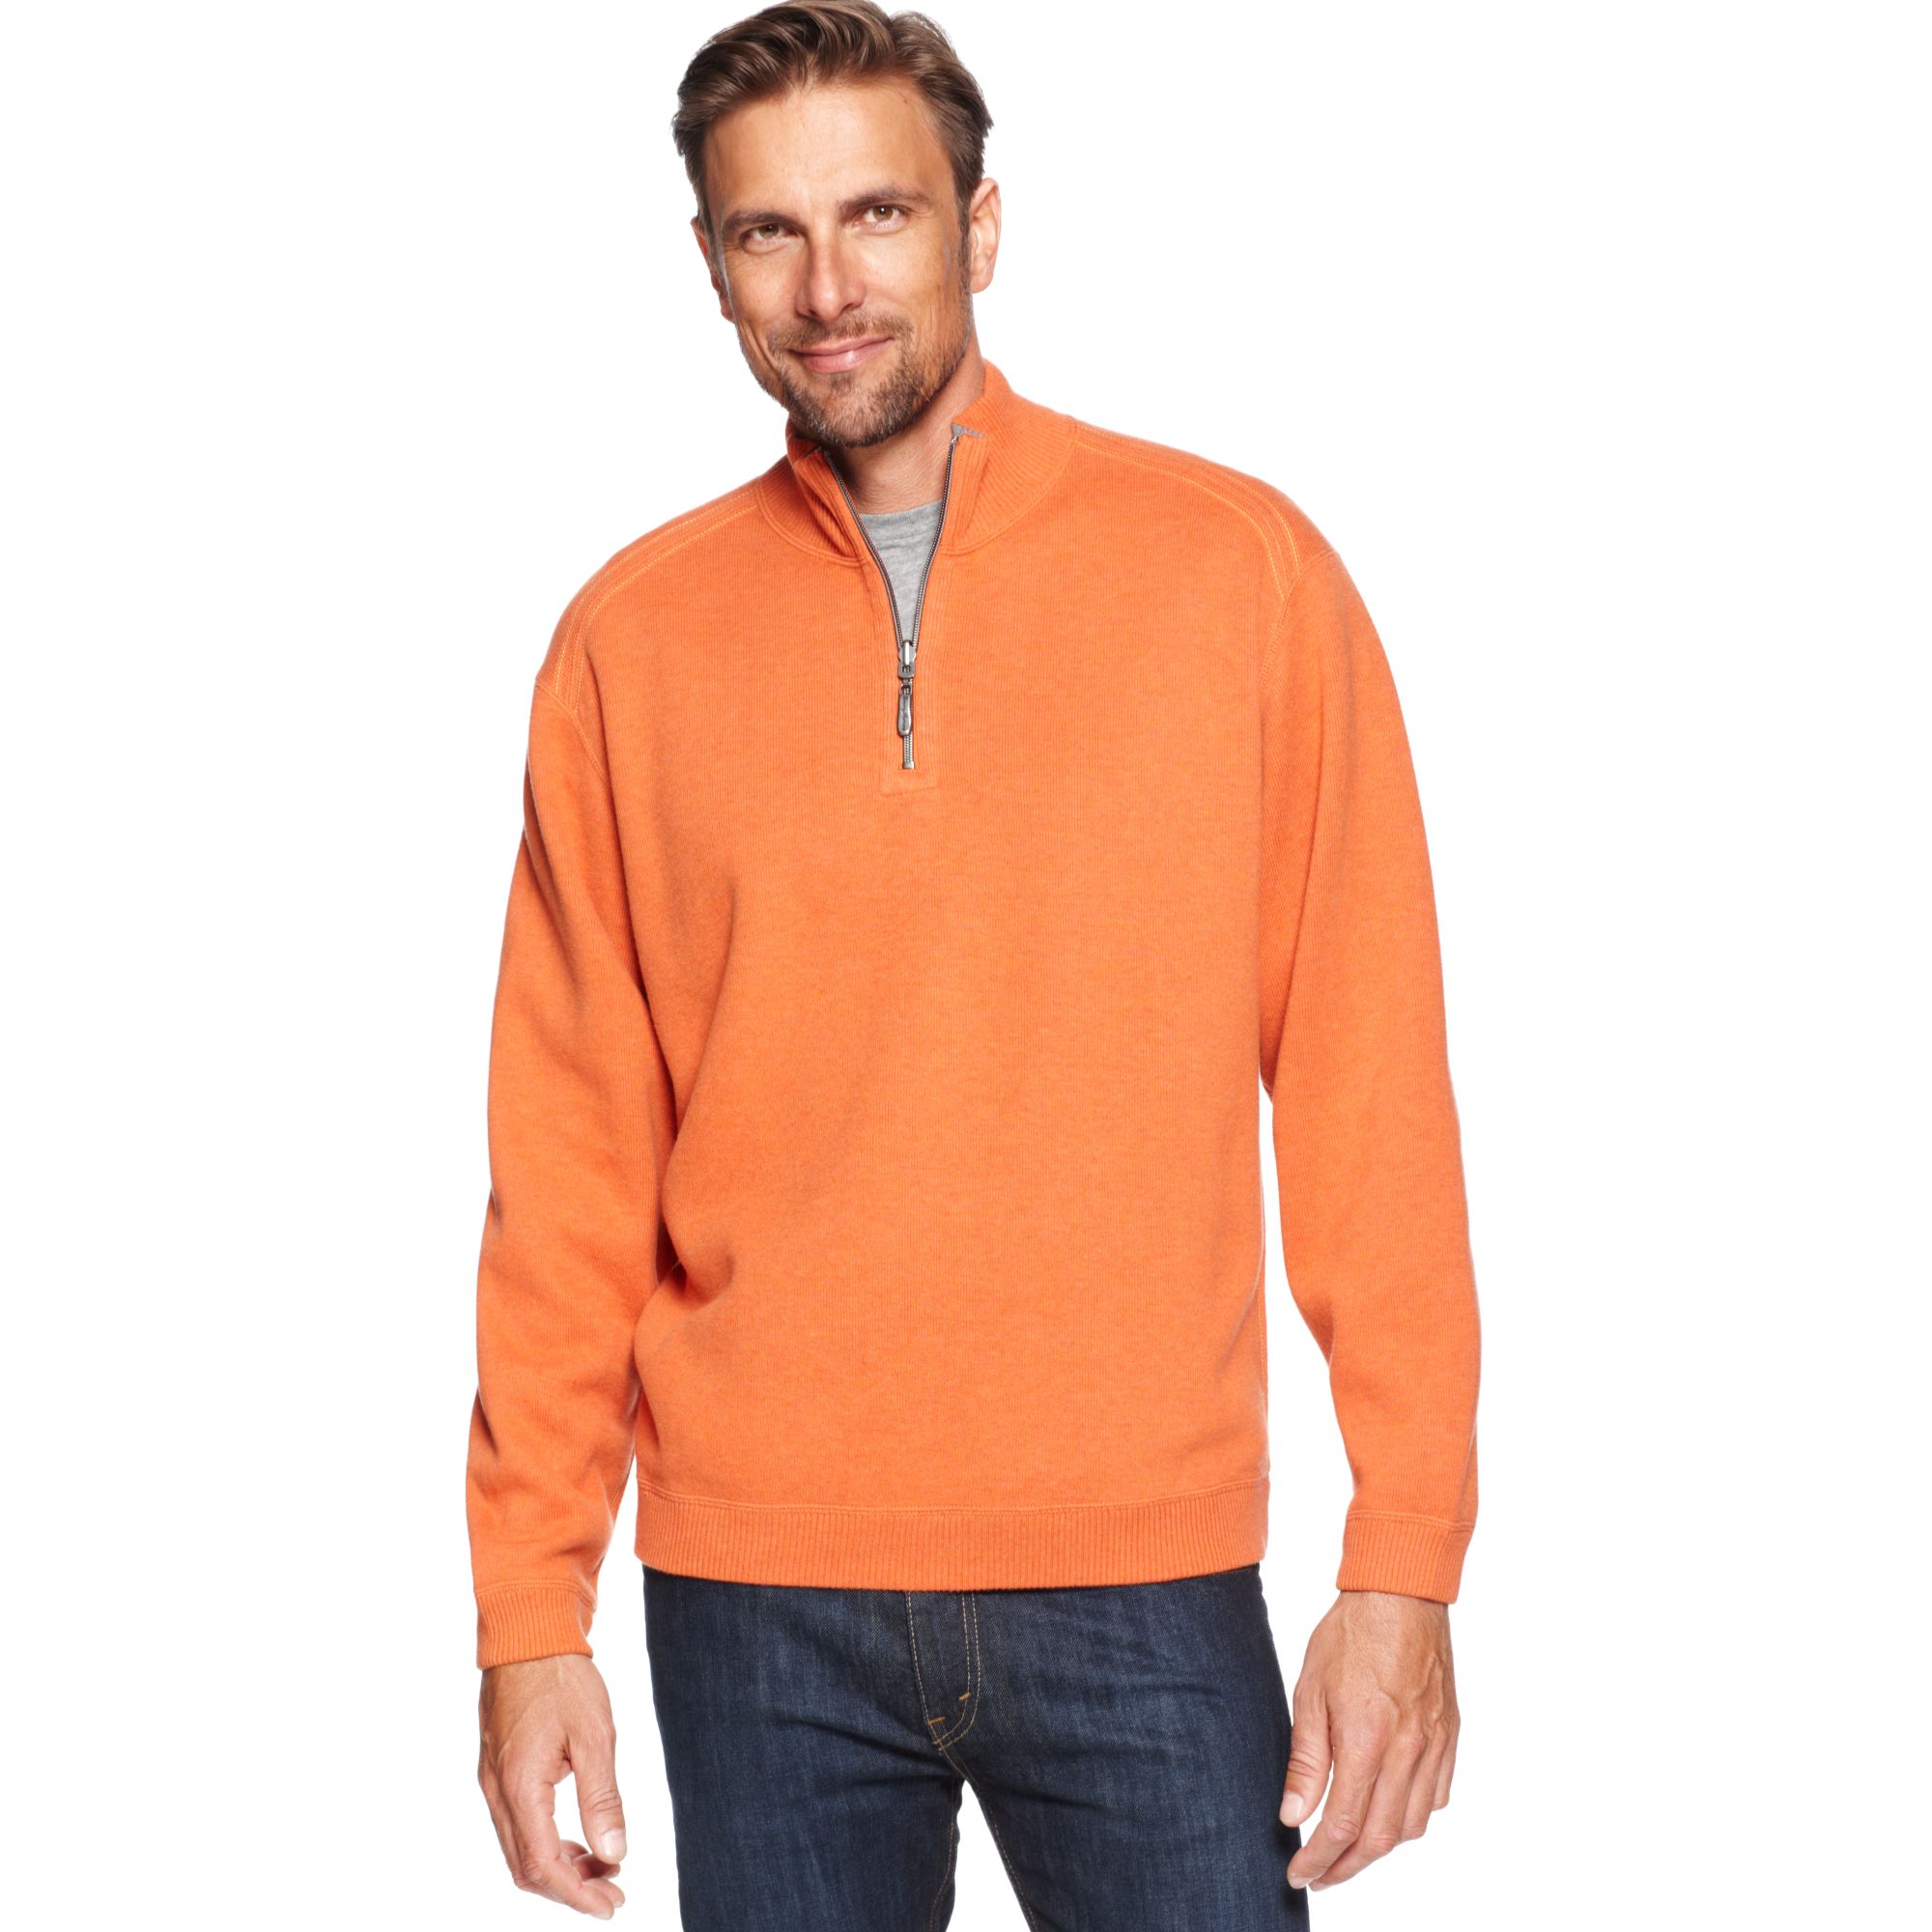 Lyst - Tommy Bahama Flip Side Pro Half Zip Reversible Sweater in Orange ...